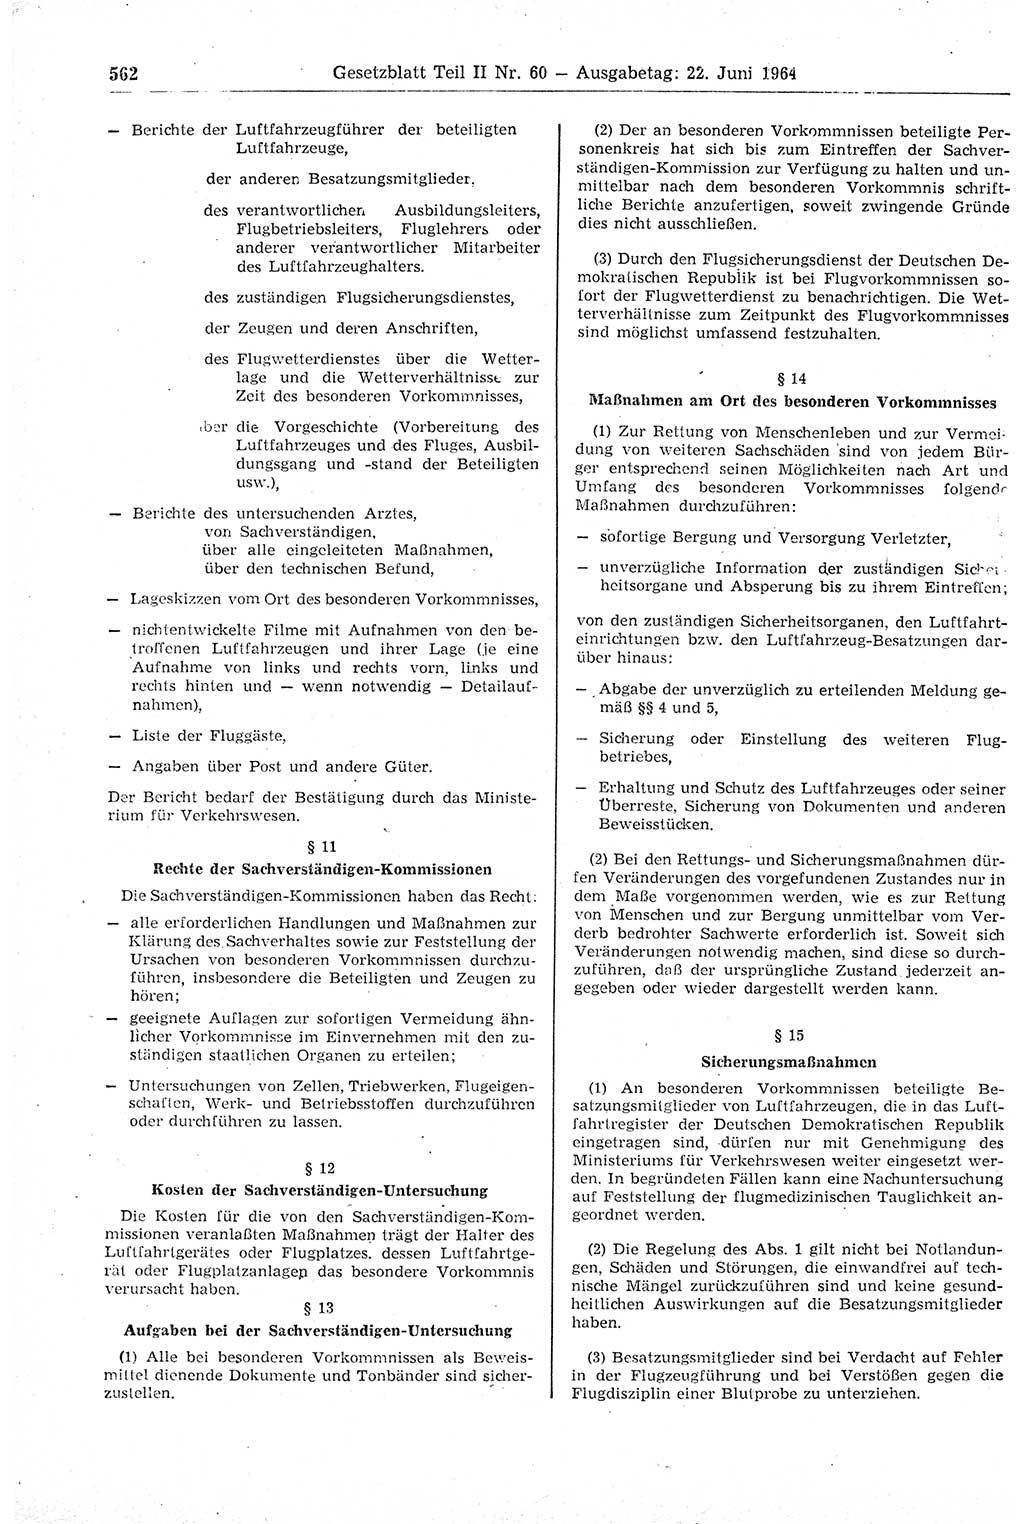 Gesetzblatt (GBl.) der Deutschen Demokratischen Republik (DDR) Teil ⅠⅠ 1964, Seite 562 (GBl. DDR ⅠⅠ 1964, S. 562)